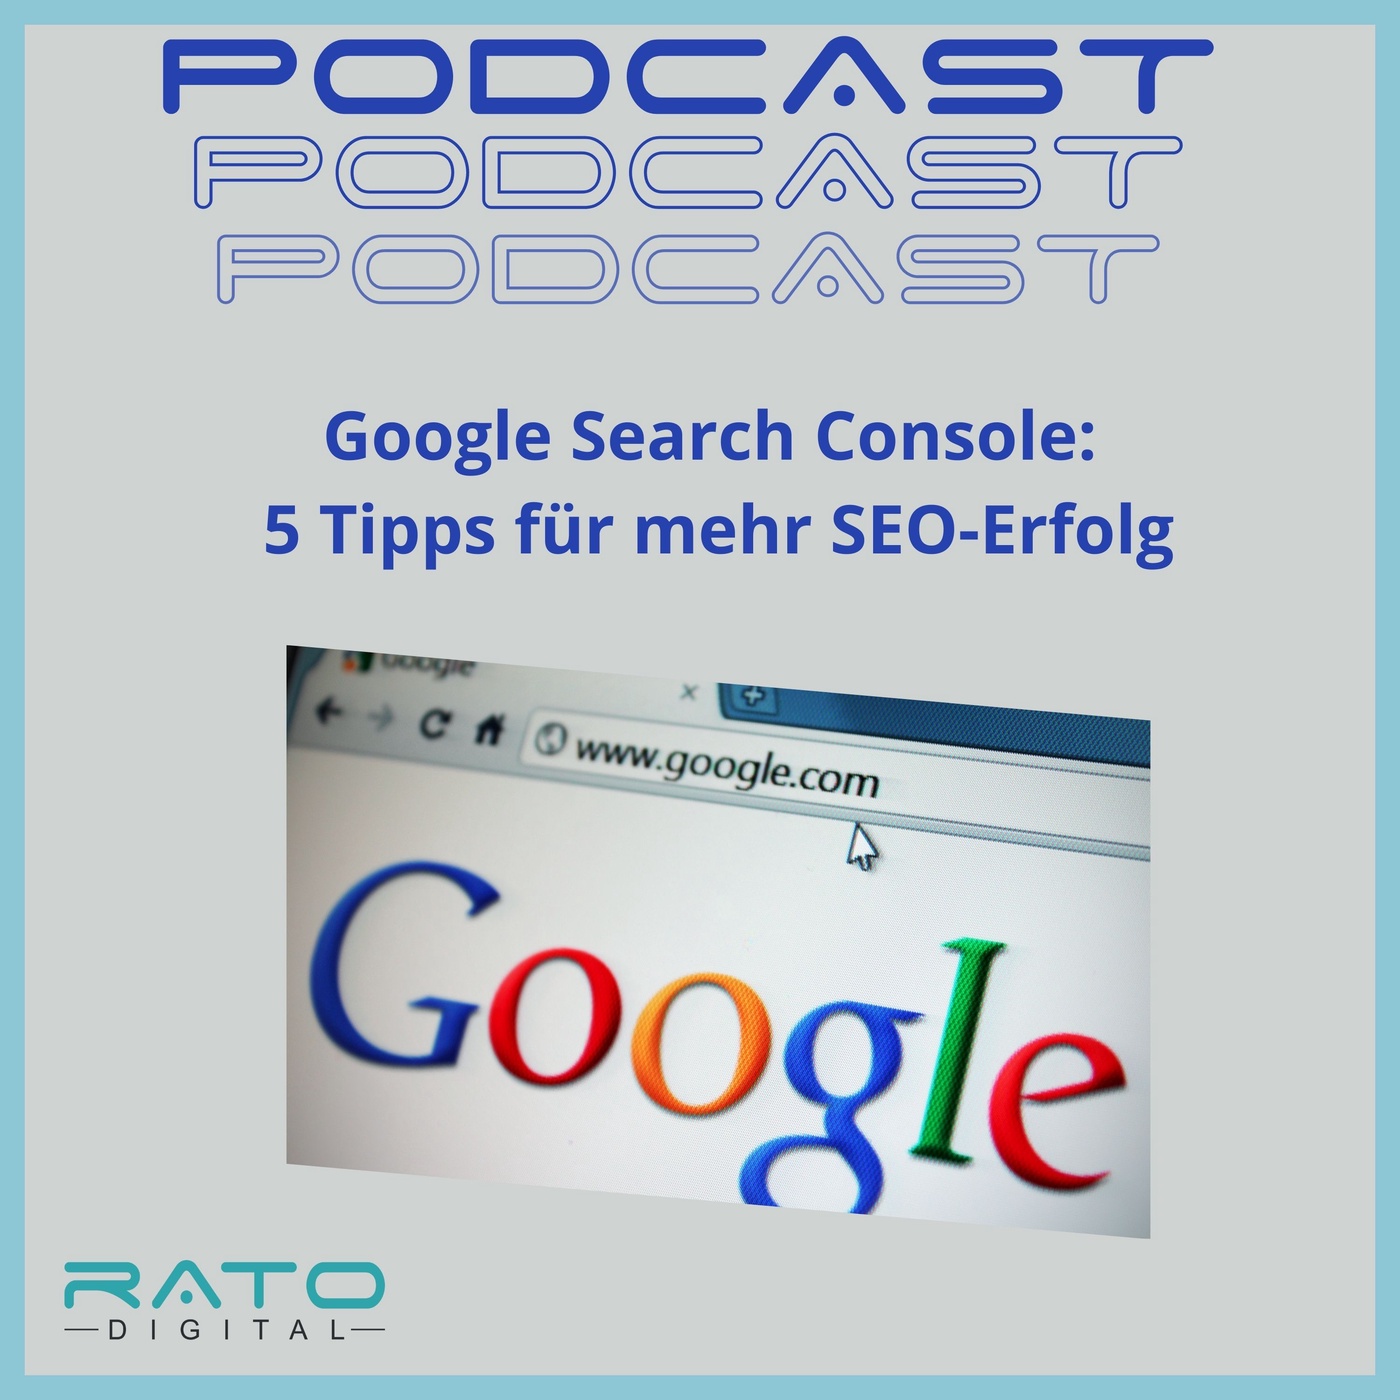 Google Search Console: 5 Tipps für mehr SEO-Erfolg